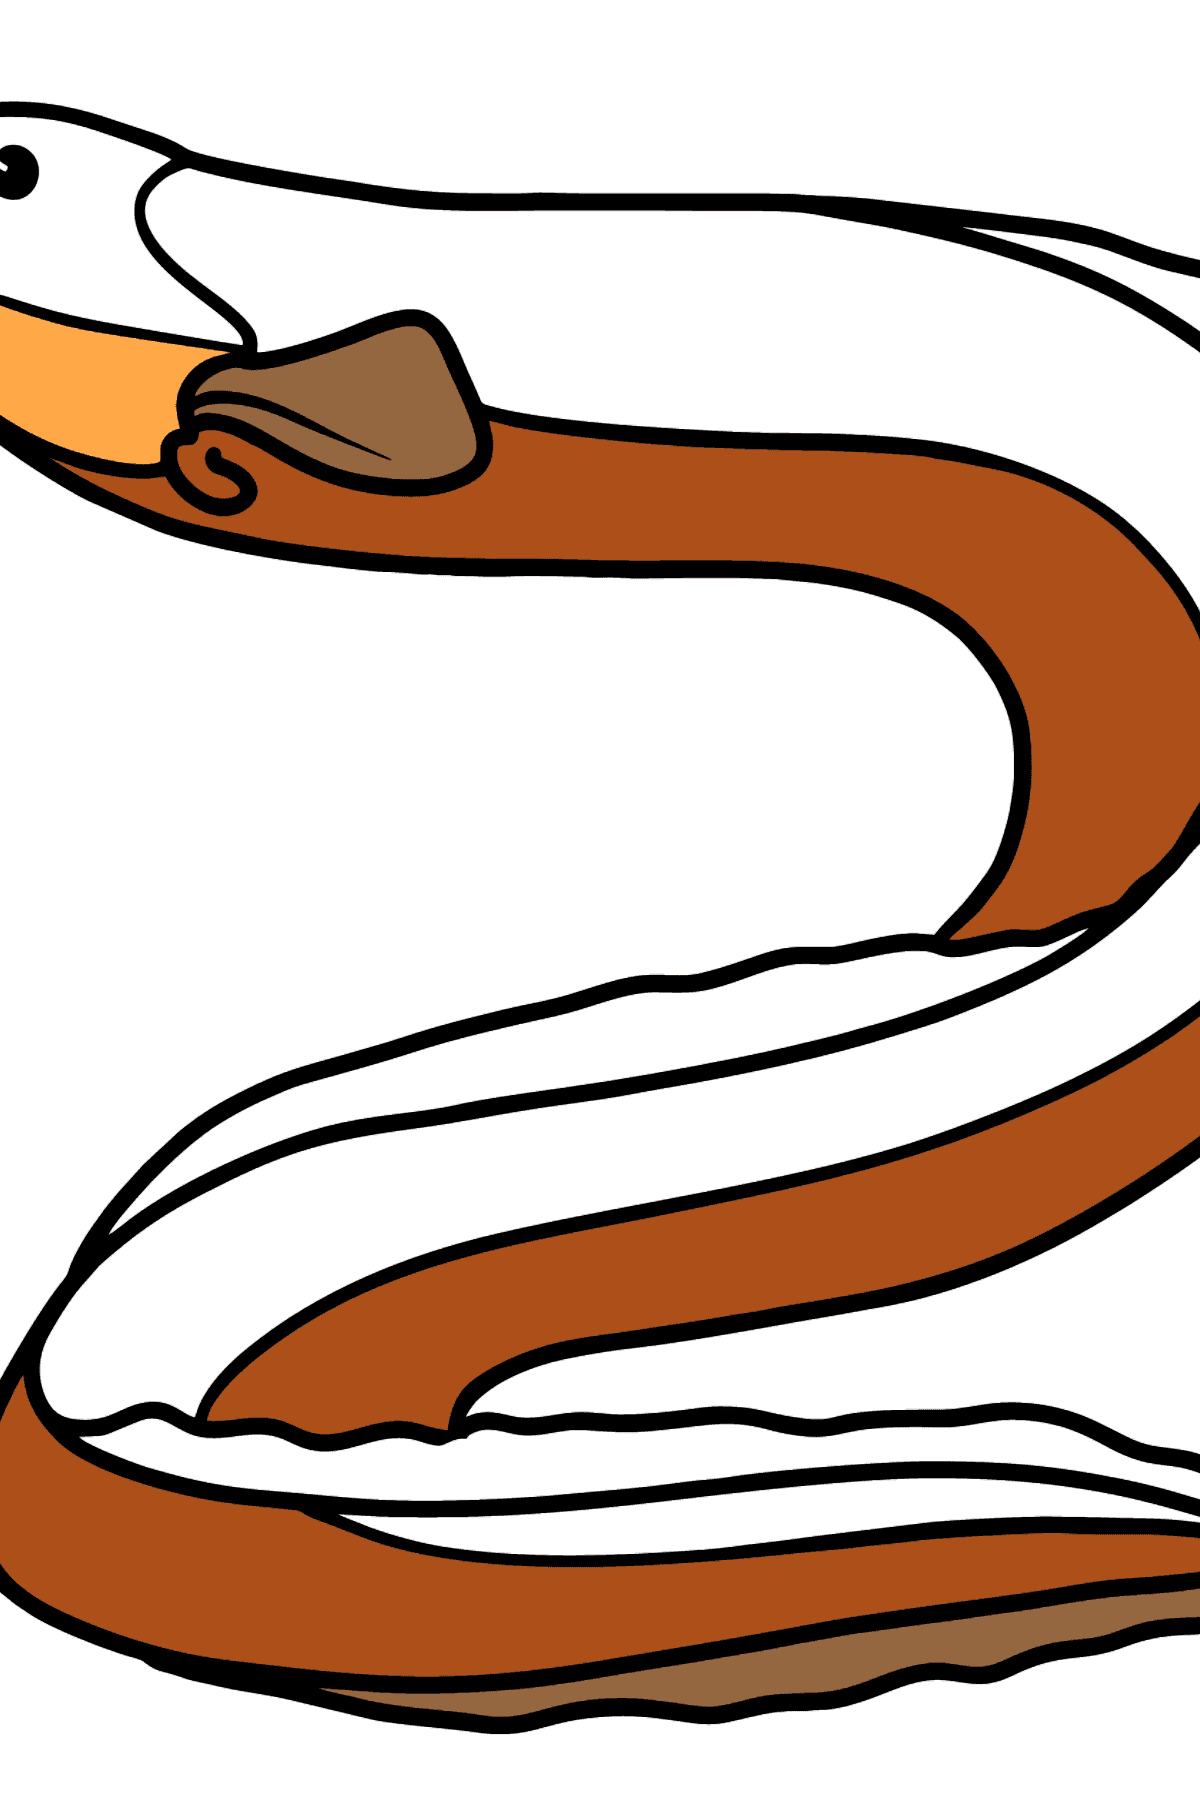 Dibujo de anguila para colorear - Dibujos para Colorear para Niños